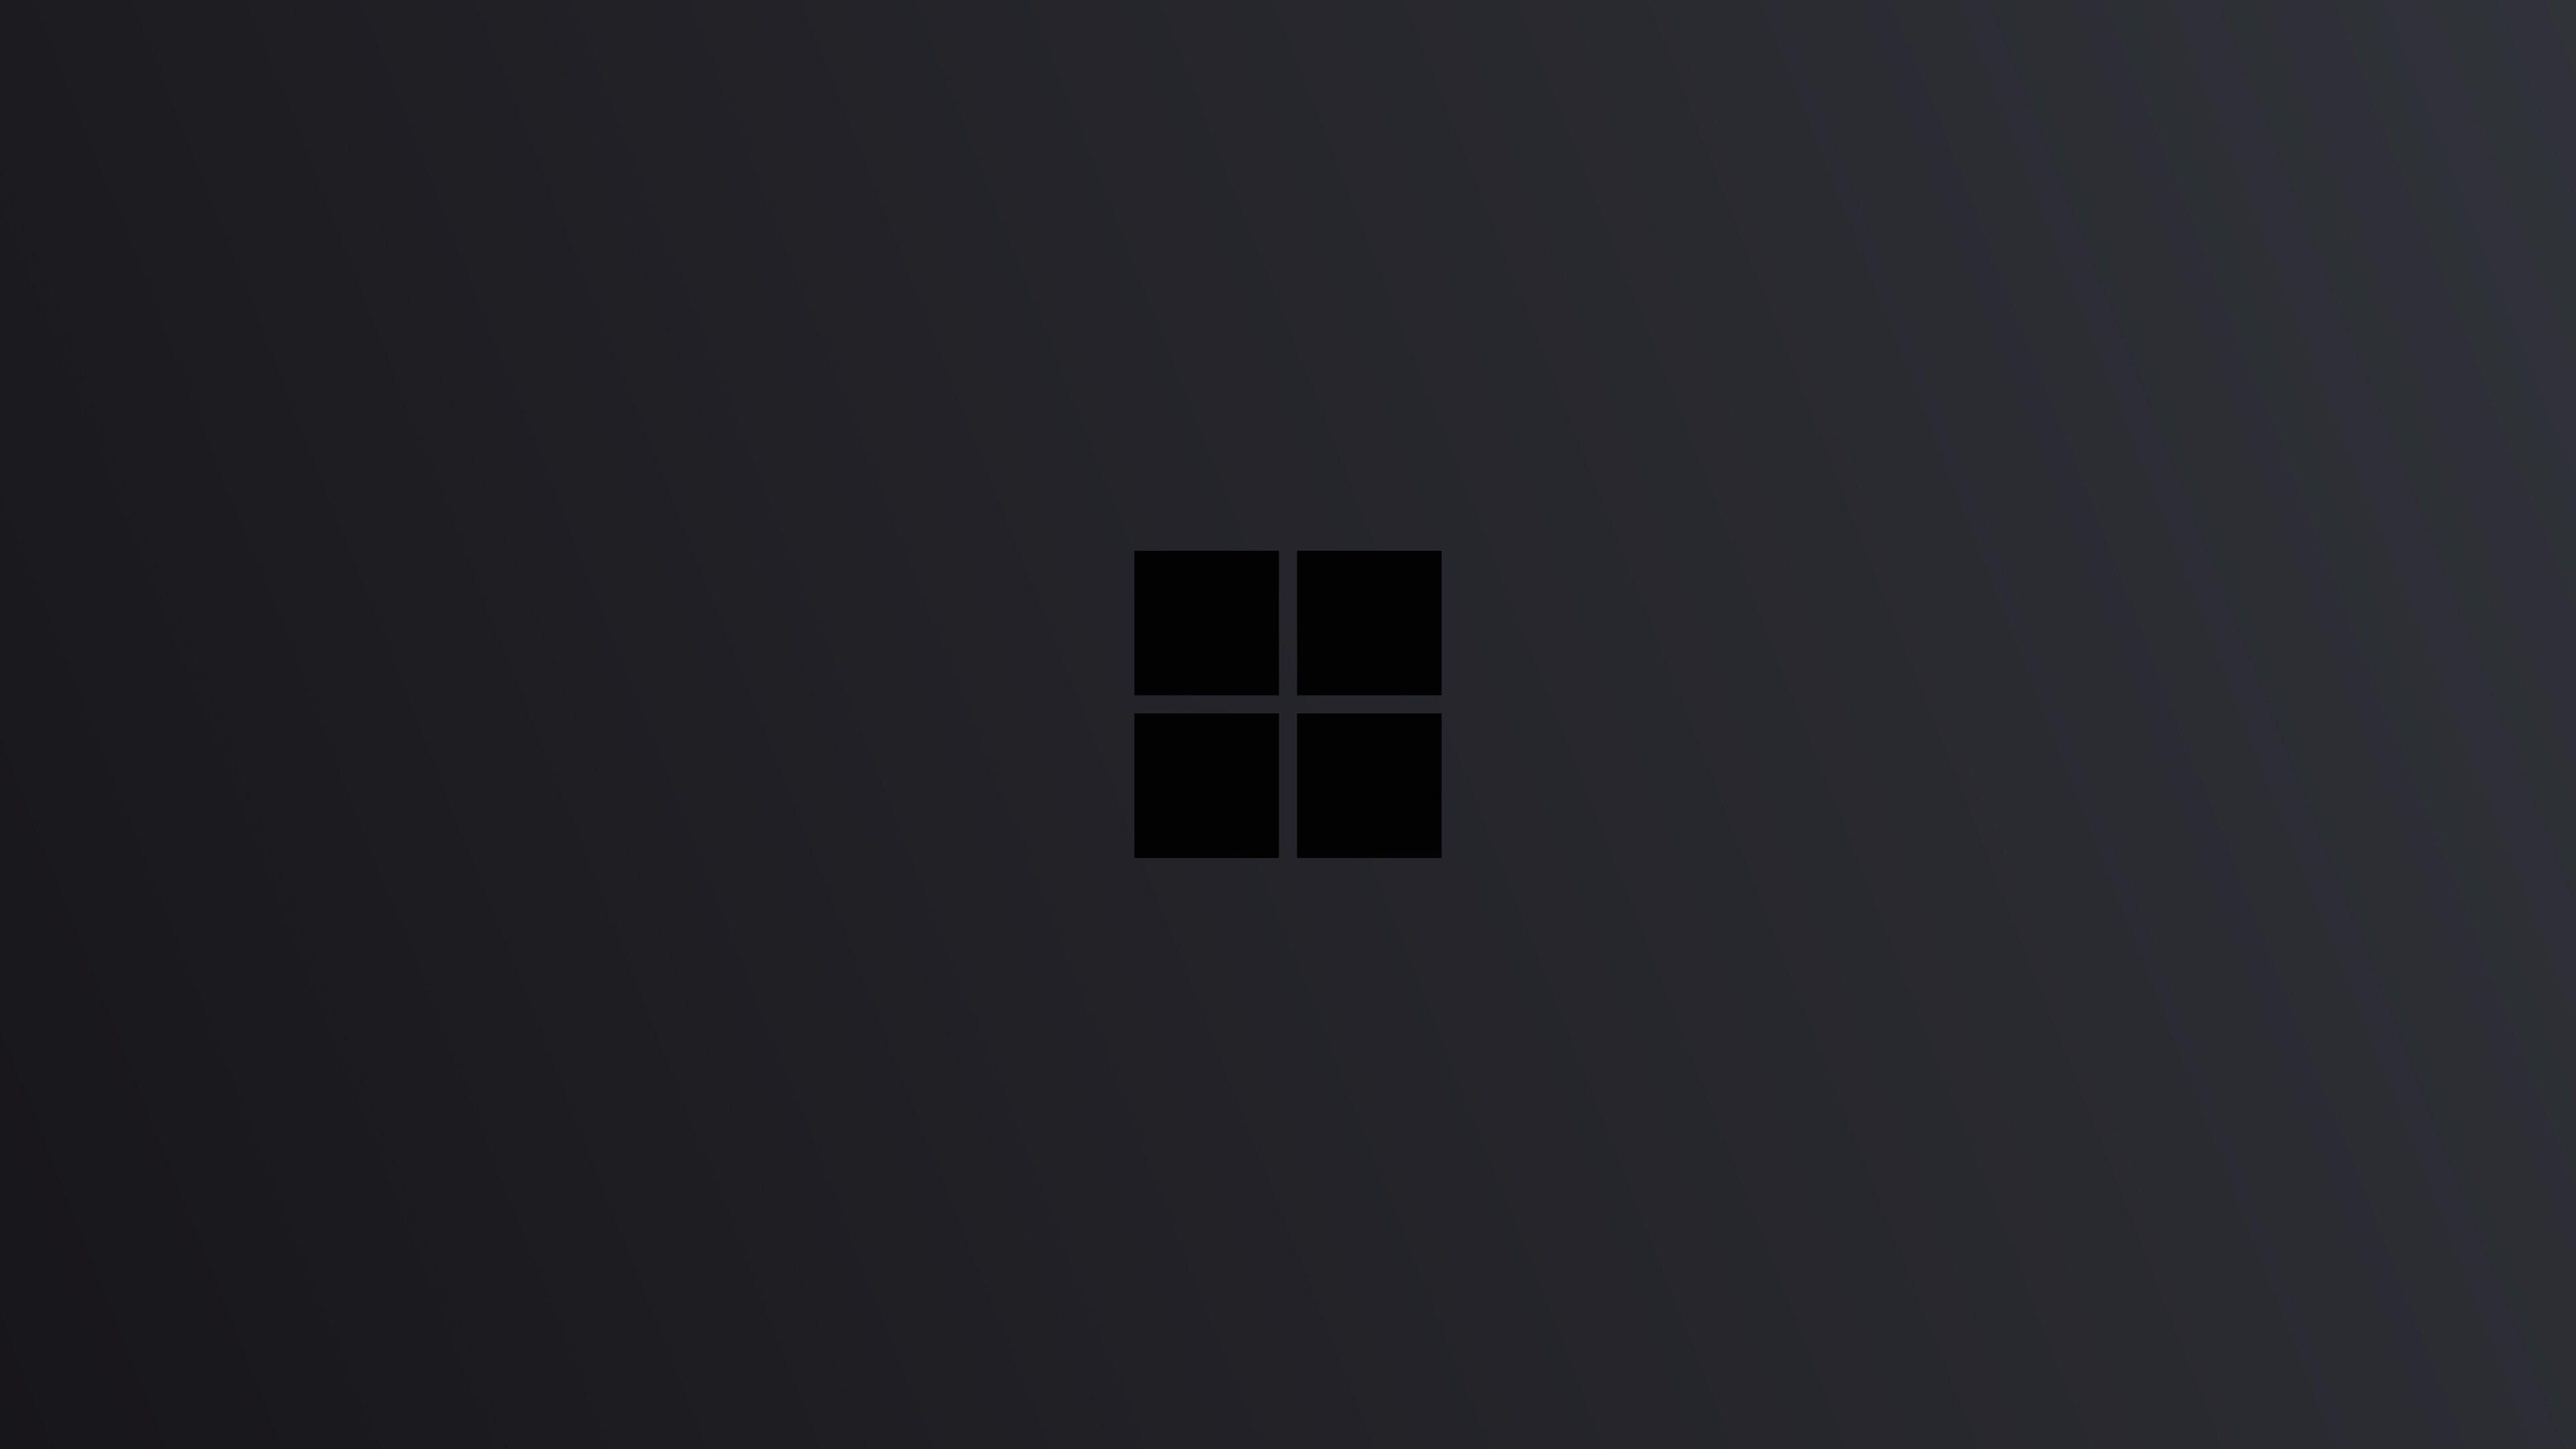 Dark Windows 10 Wallpapers - Top Free Dark Windows 10 Backgrounds